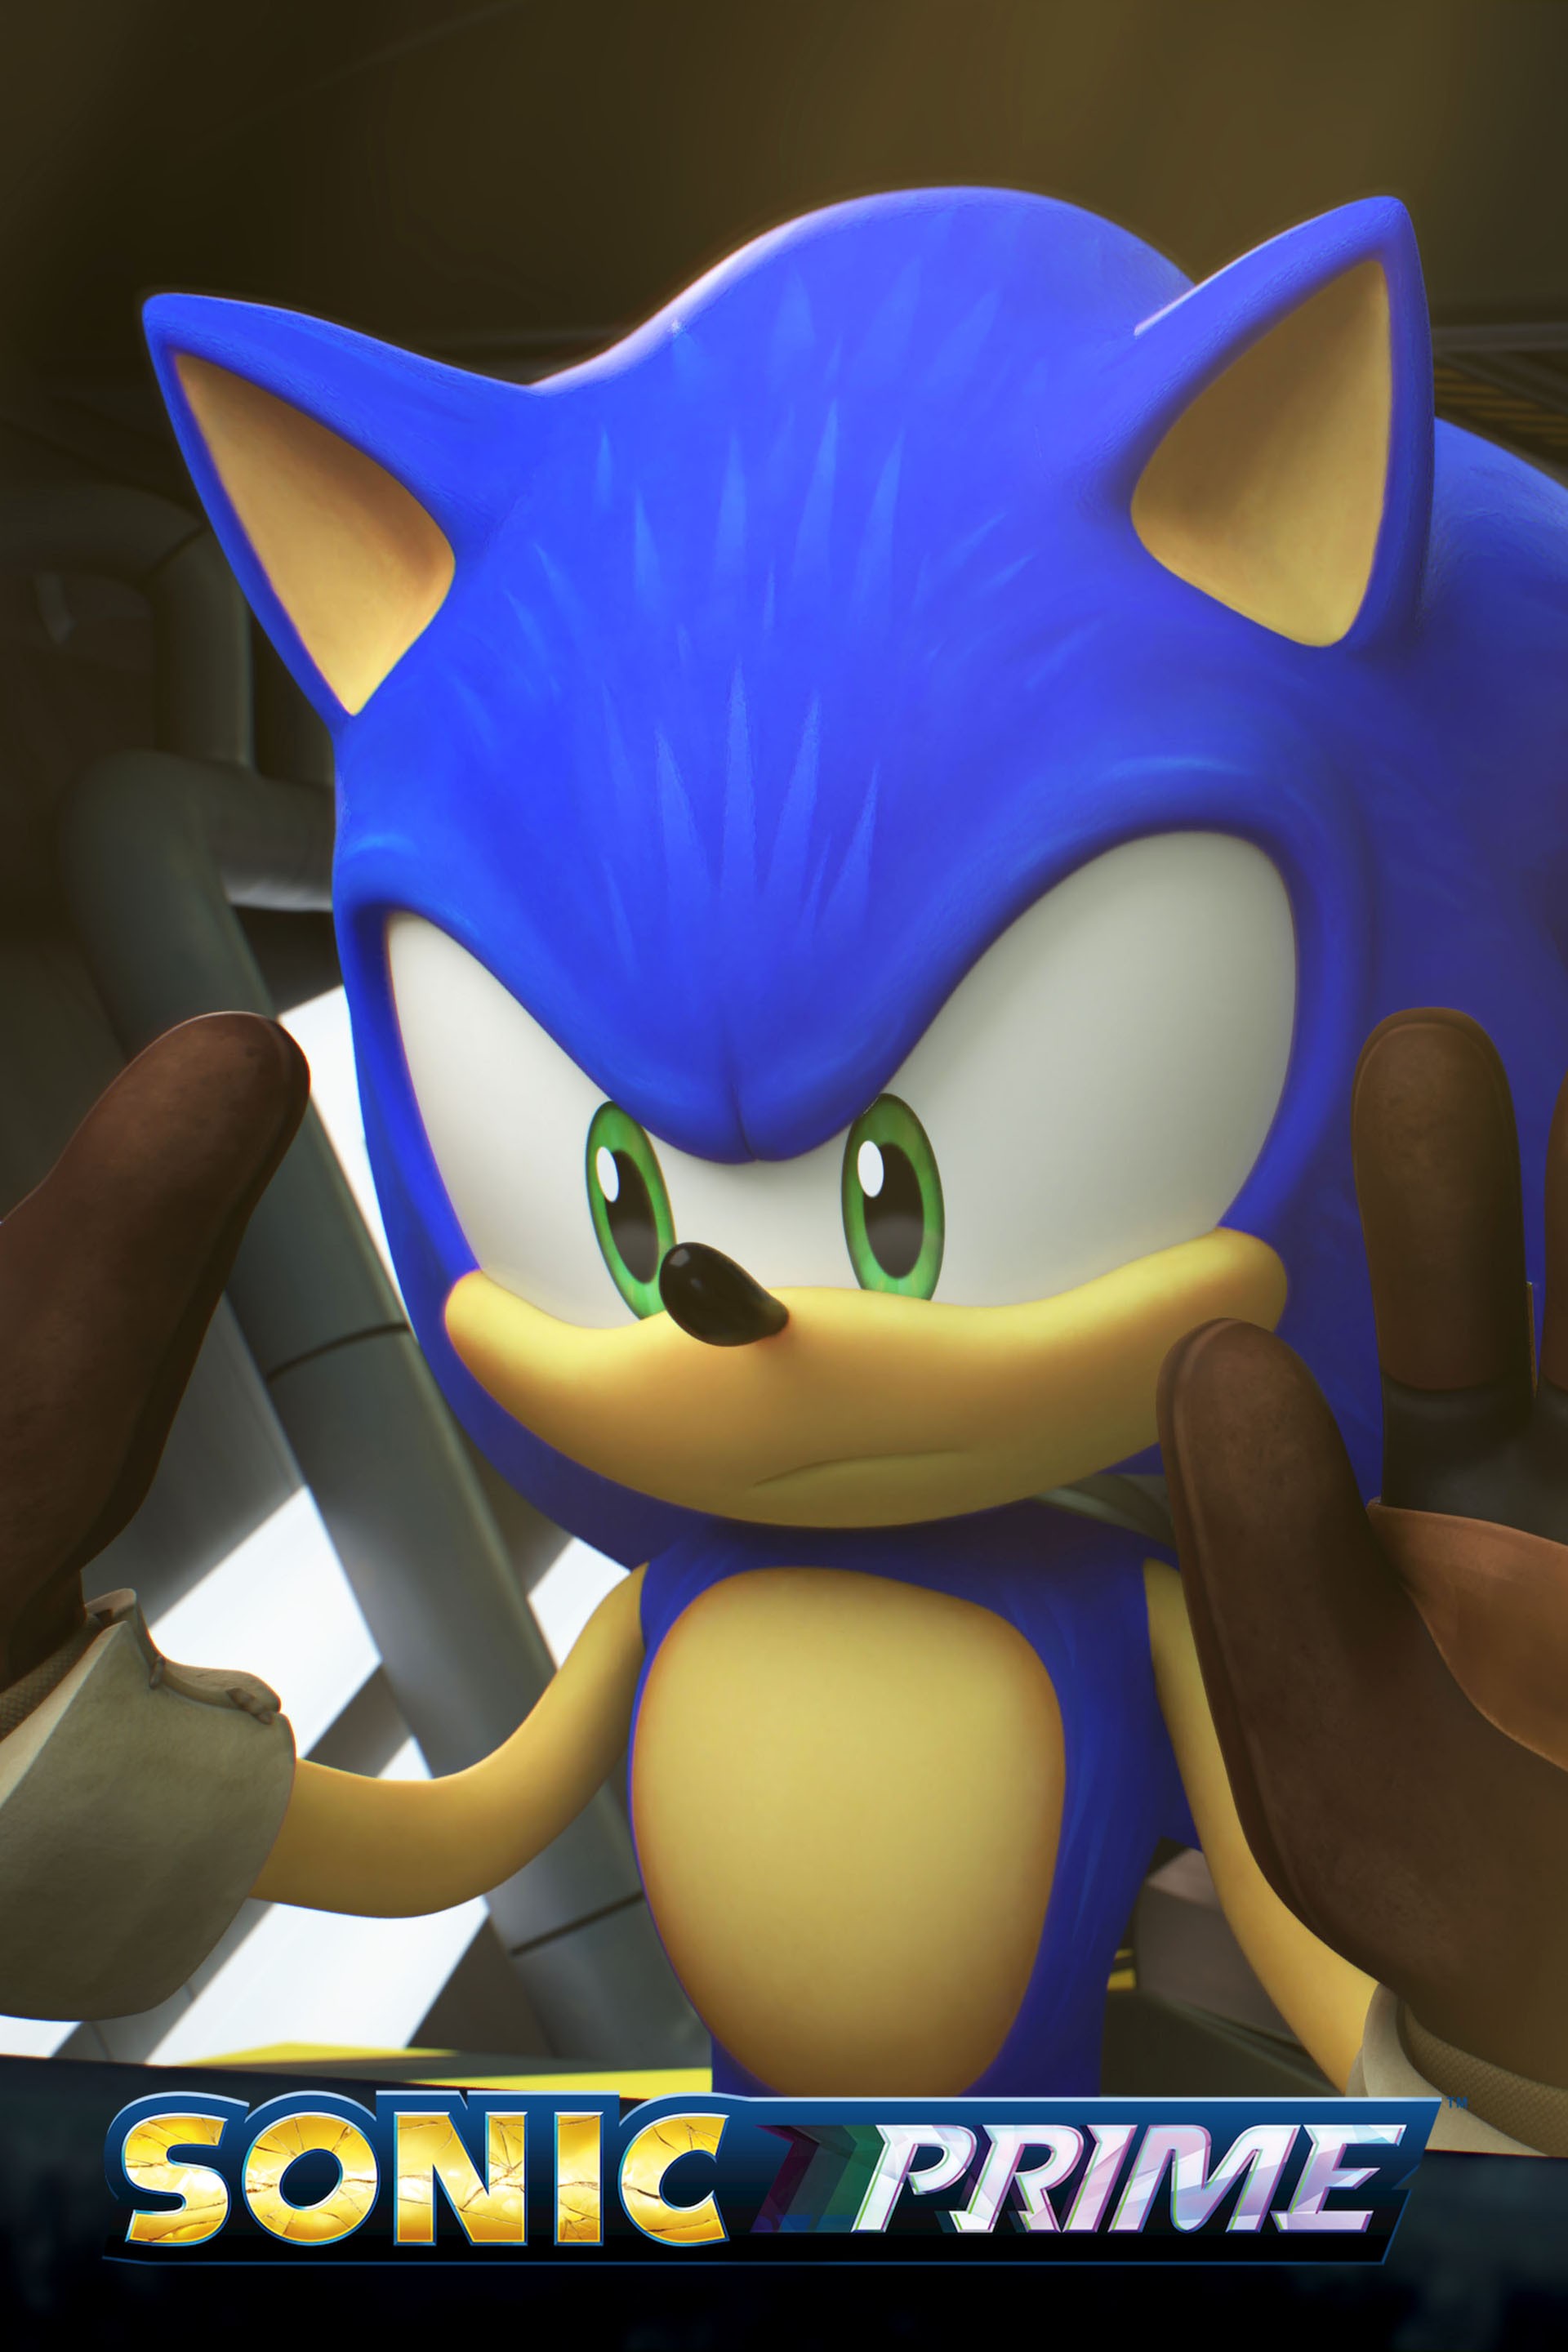 Sonic Prime Season 3 (2024) Trailer